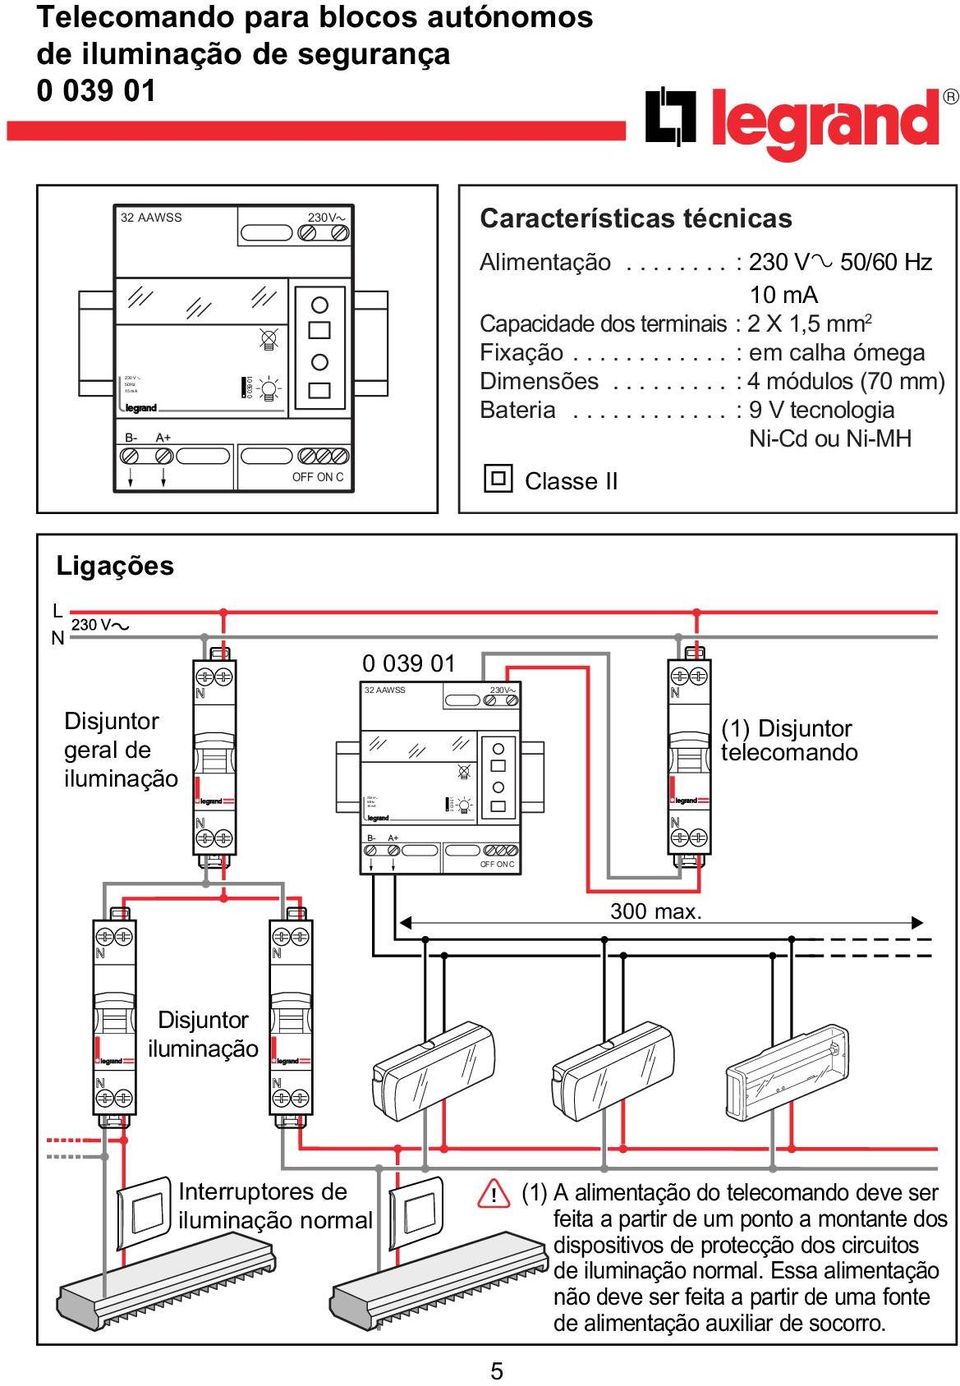 .. :9Vtecnologia Ni-Cd ou Ni-MH 0 Classe II Ligações L N Disjuntor geral de iluminação (1) Disjuntor telecomando 930 300 max.